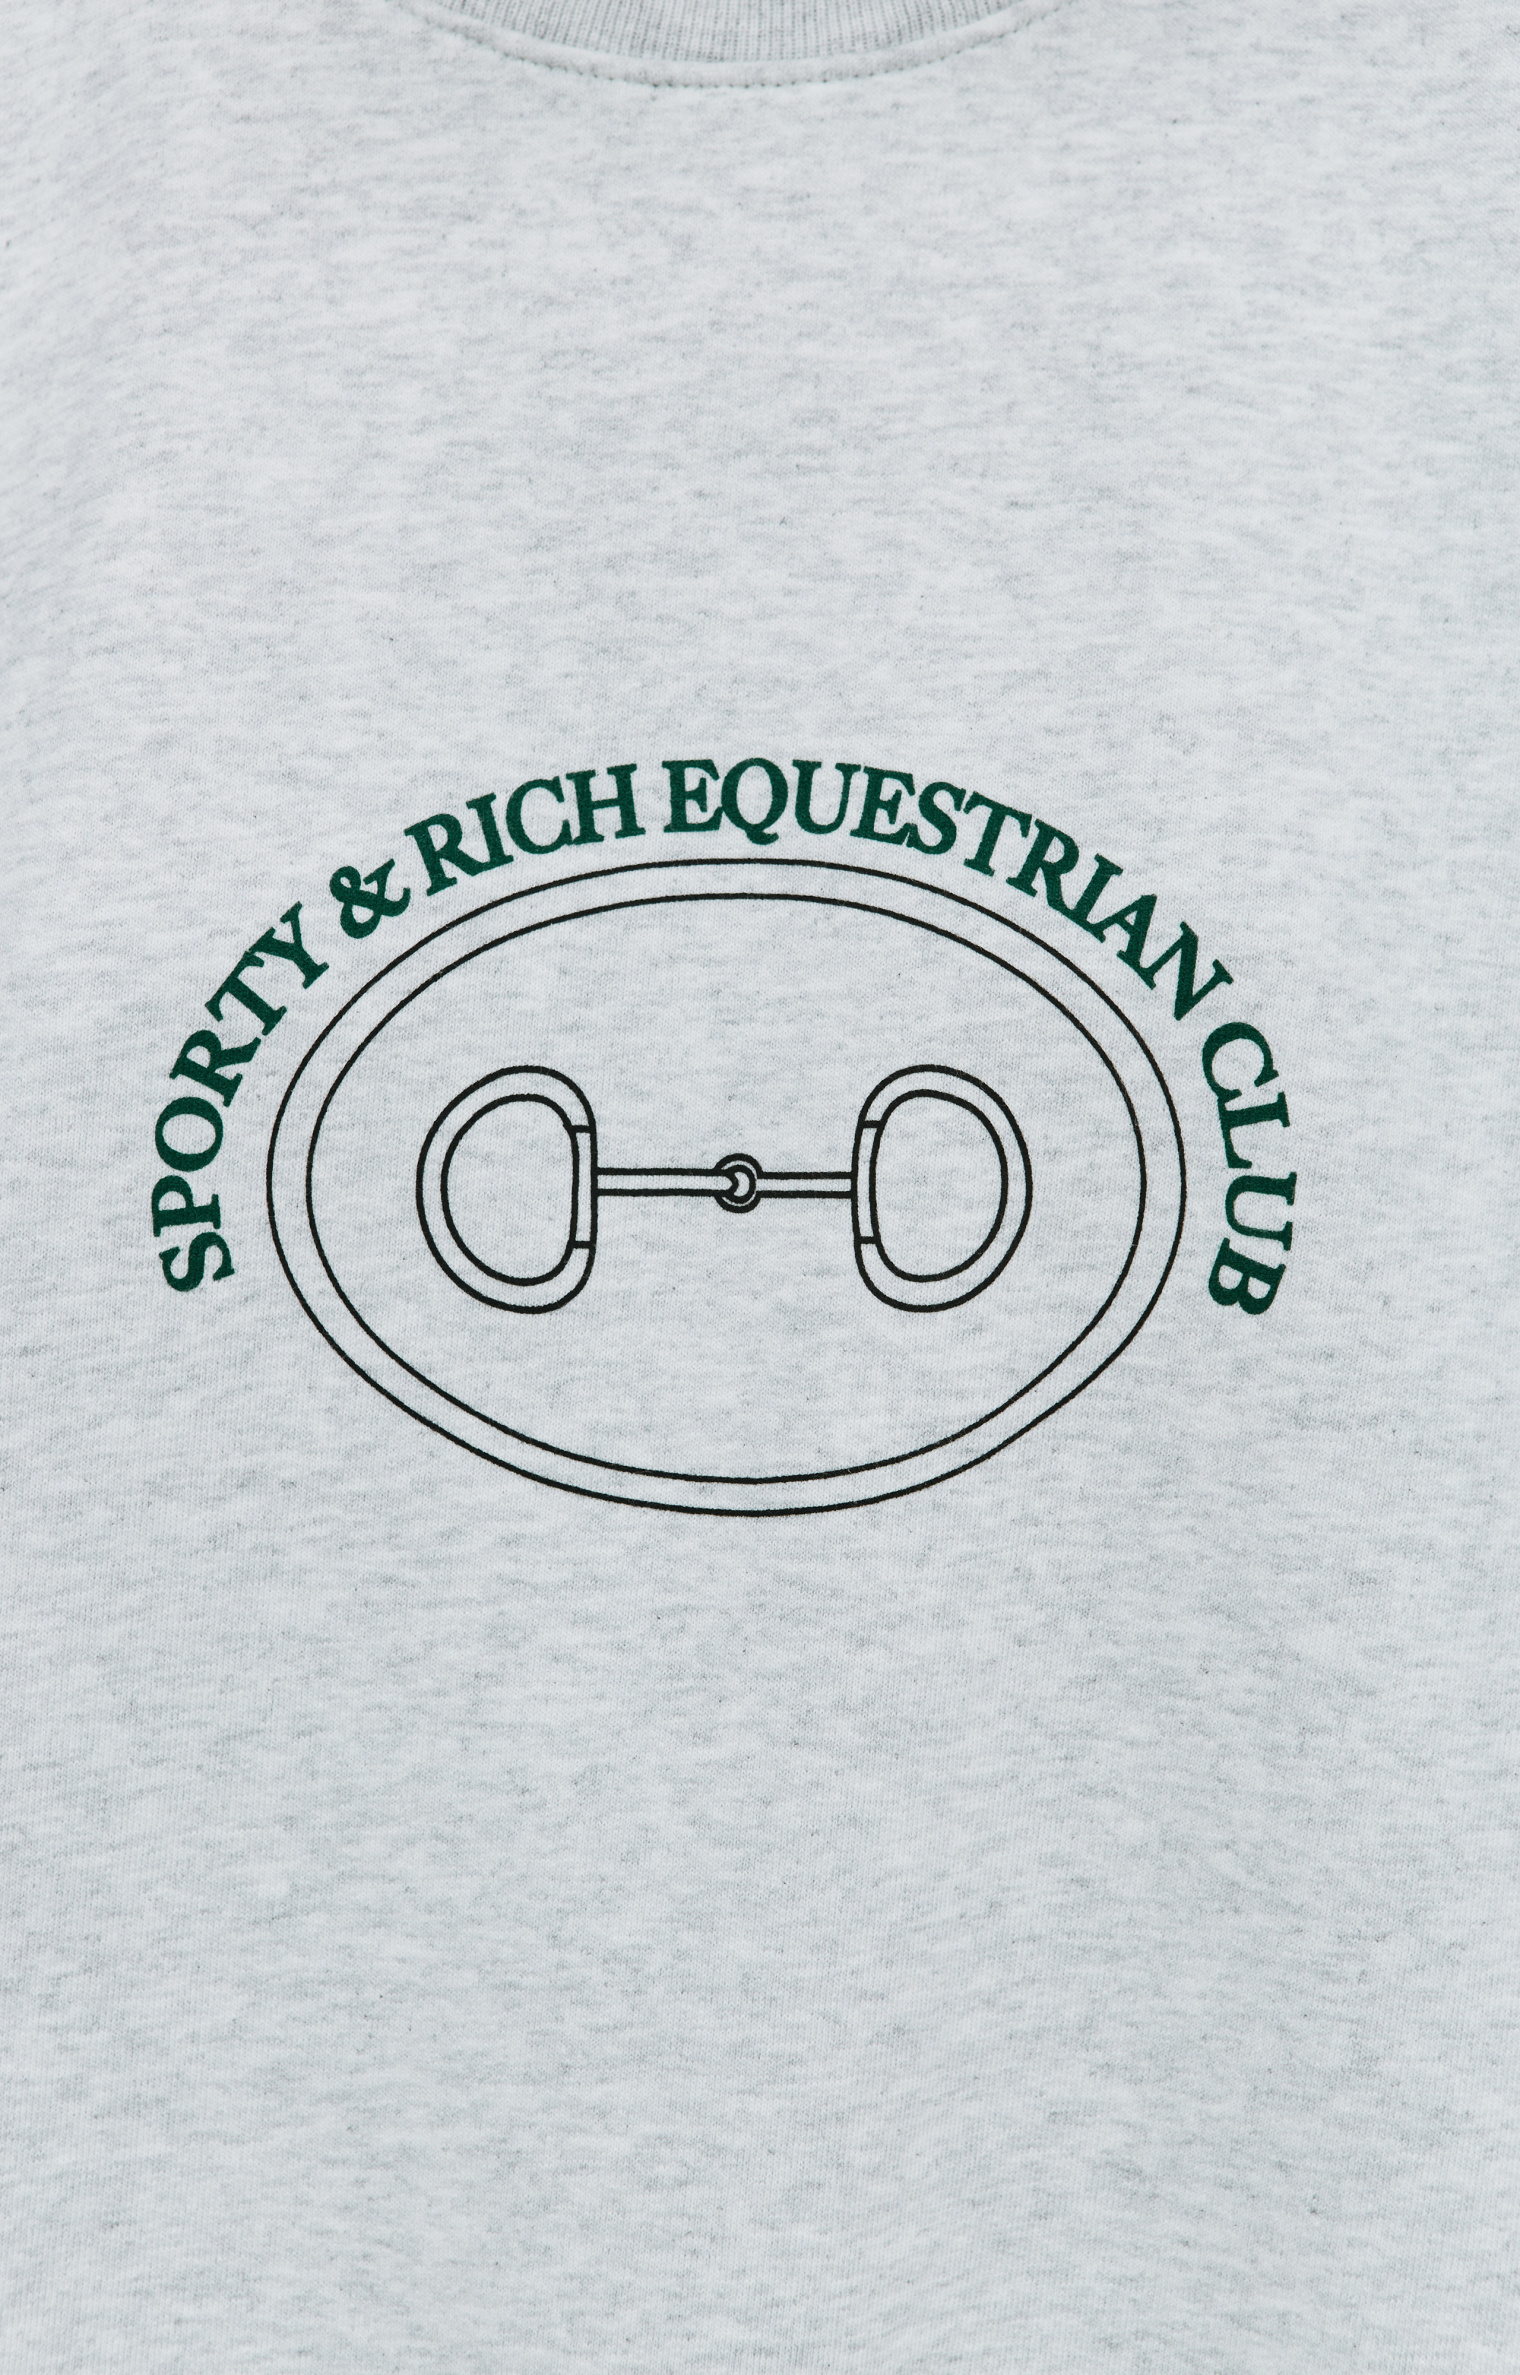 SPORTY & RICH Equestrian club sweatshirt